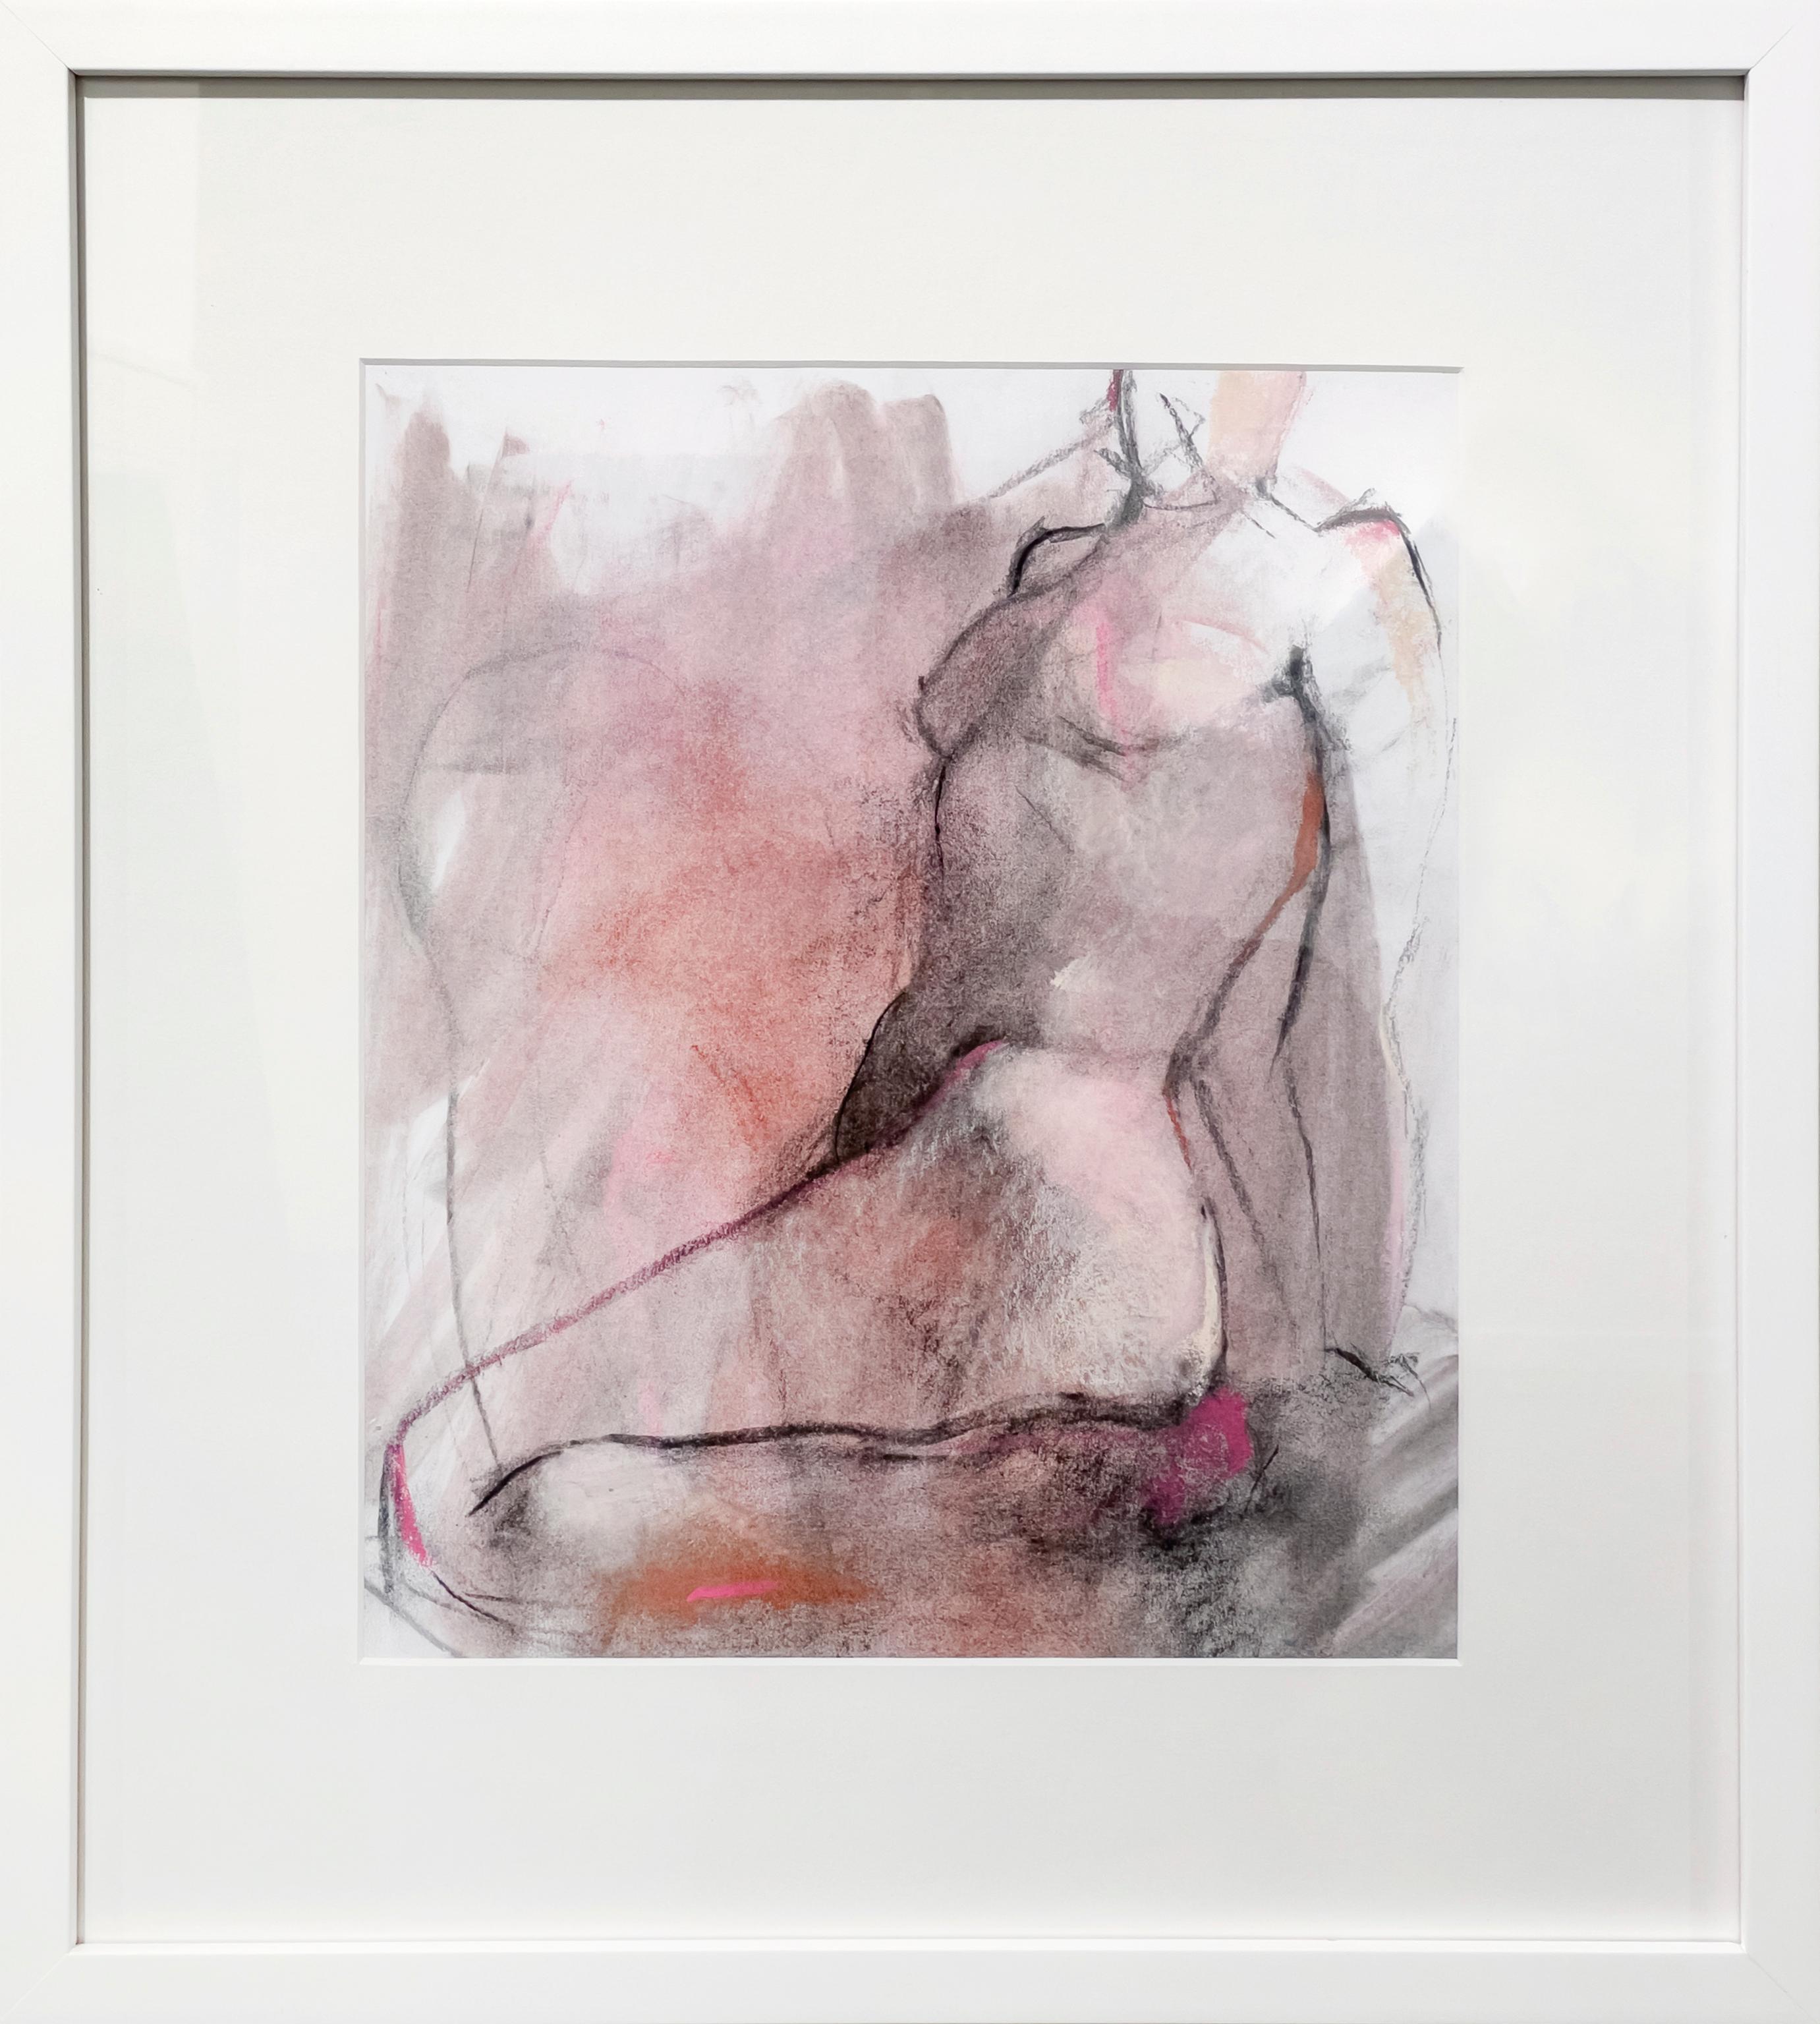 "Tonos de rosa", dibujo abstracto de una figura desnuda